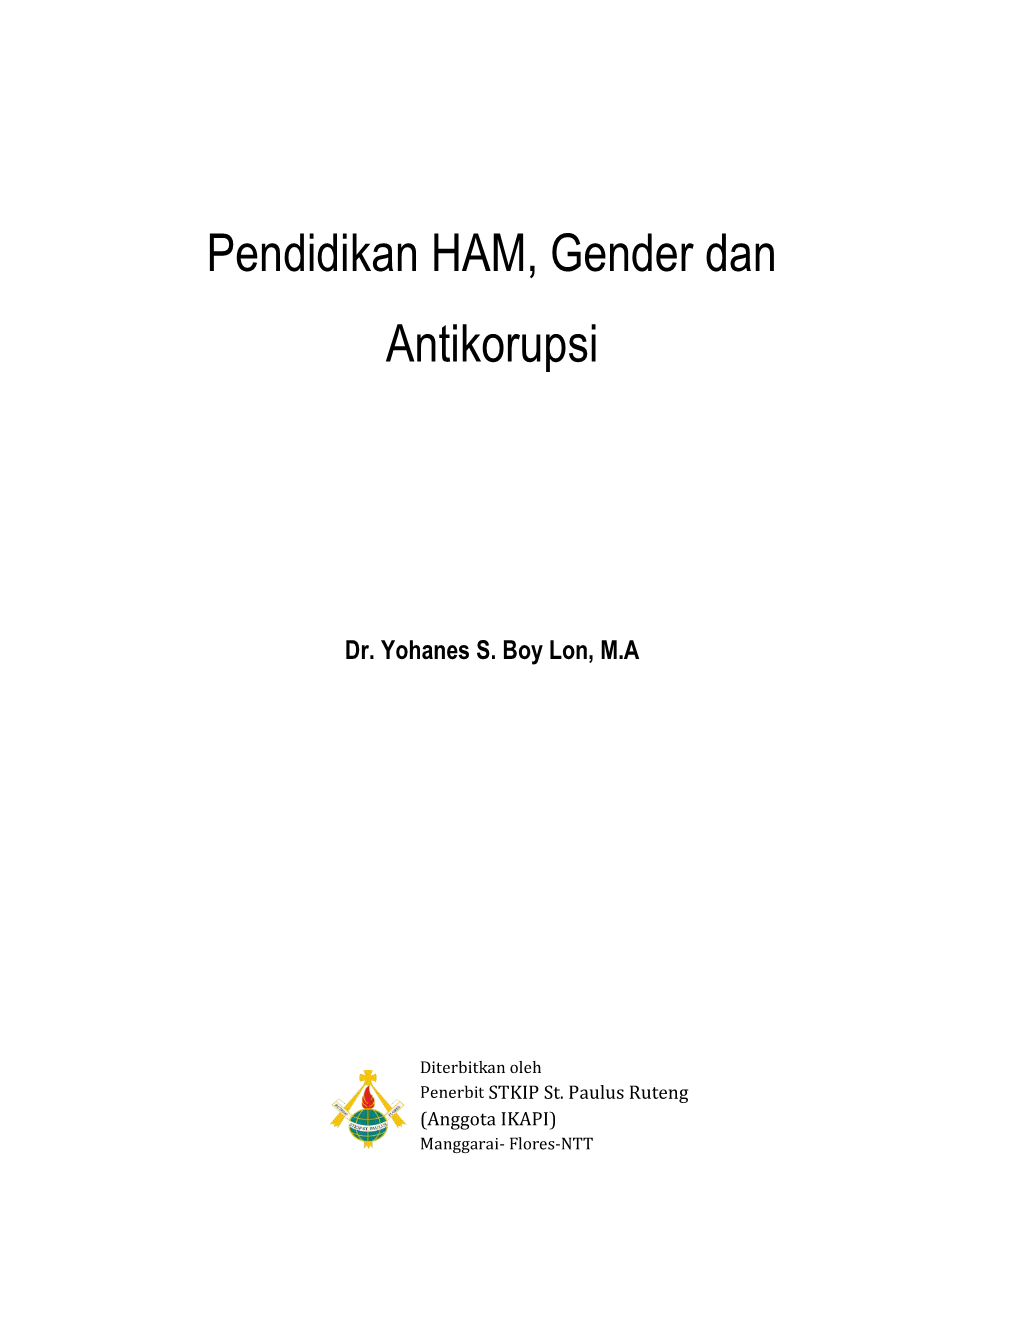 Pendidikan HAM, Gender Dan Antikorupsi